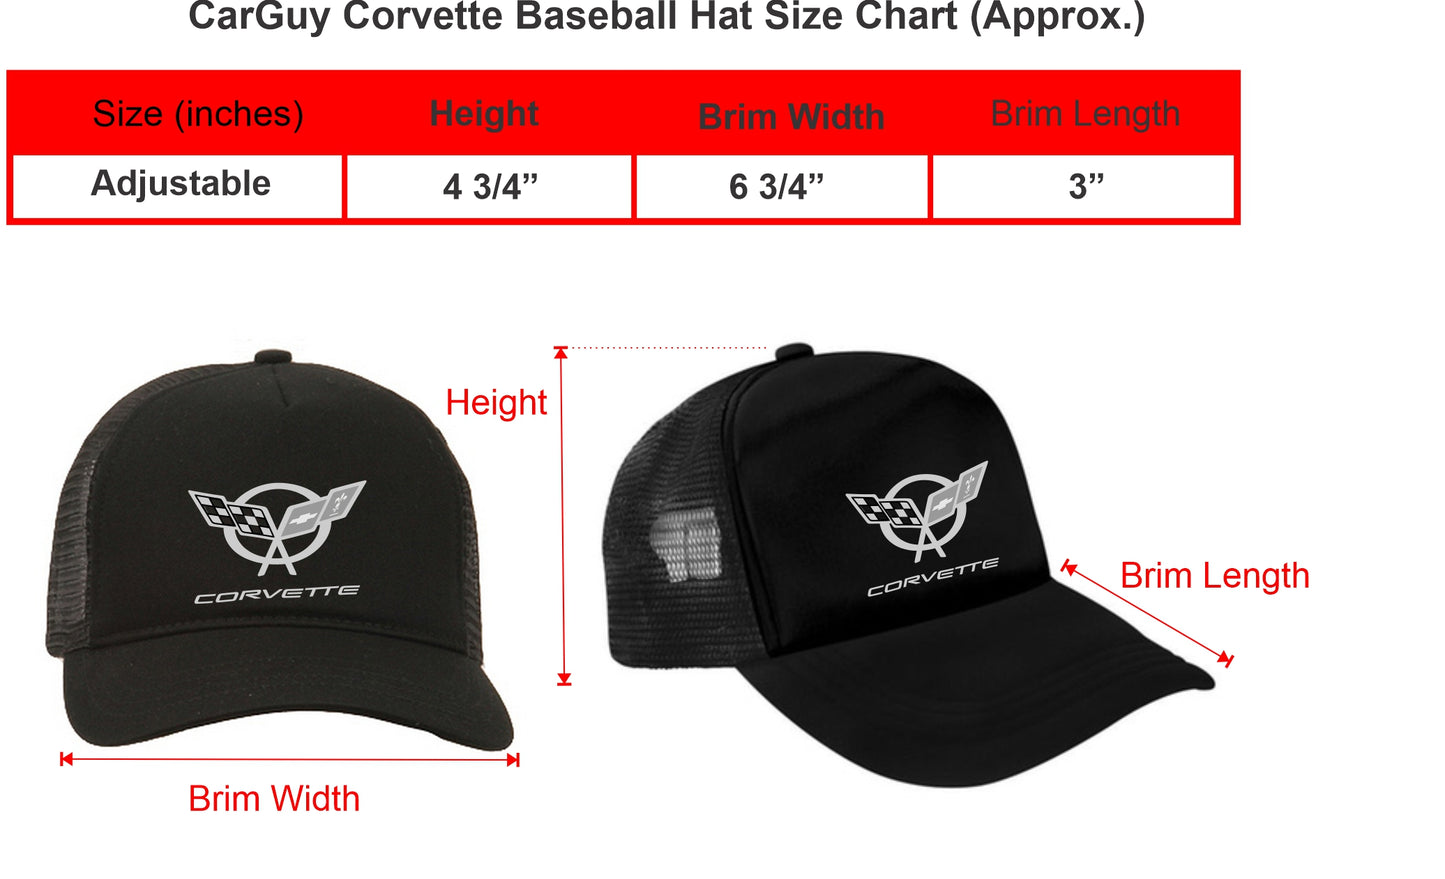 Corvette Adjustable Baseball Hats